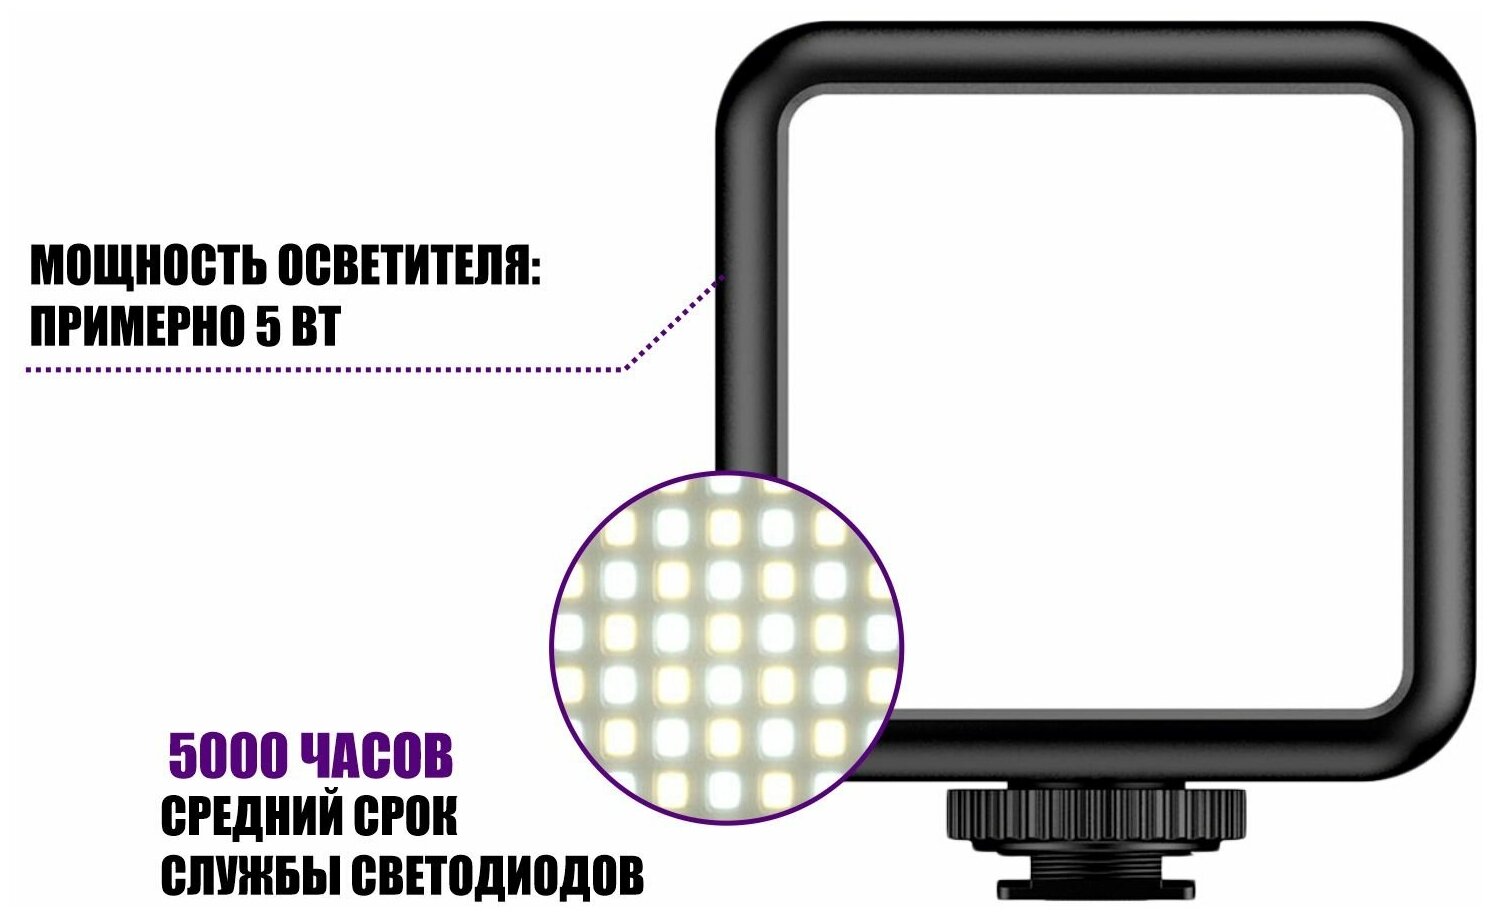 Накамерный светодиодный RGB осветитель на аккумуляторе и с креплением в паз